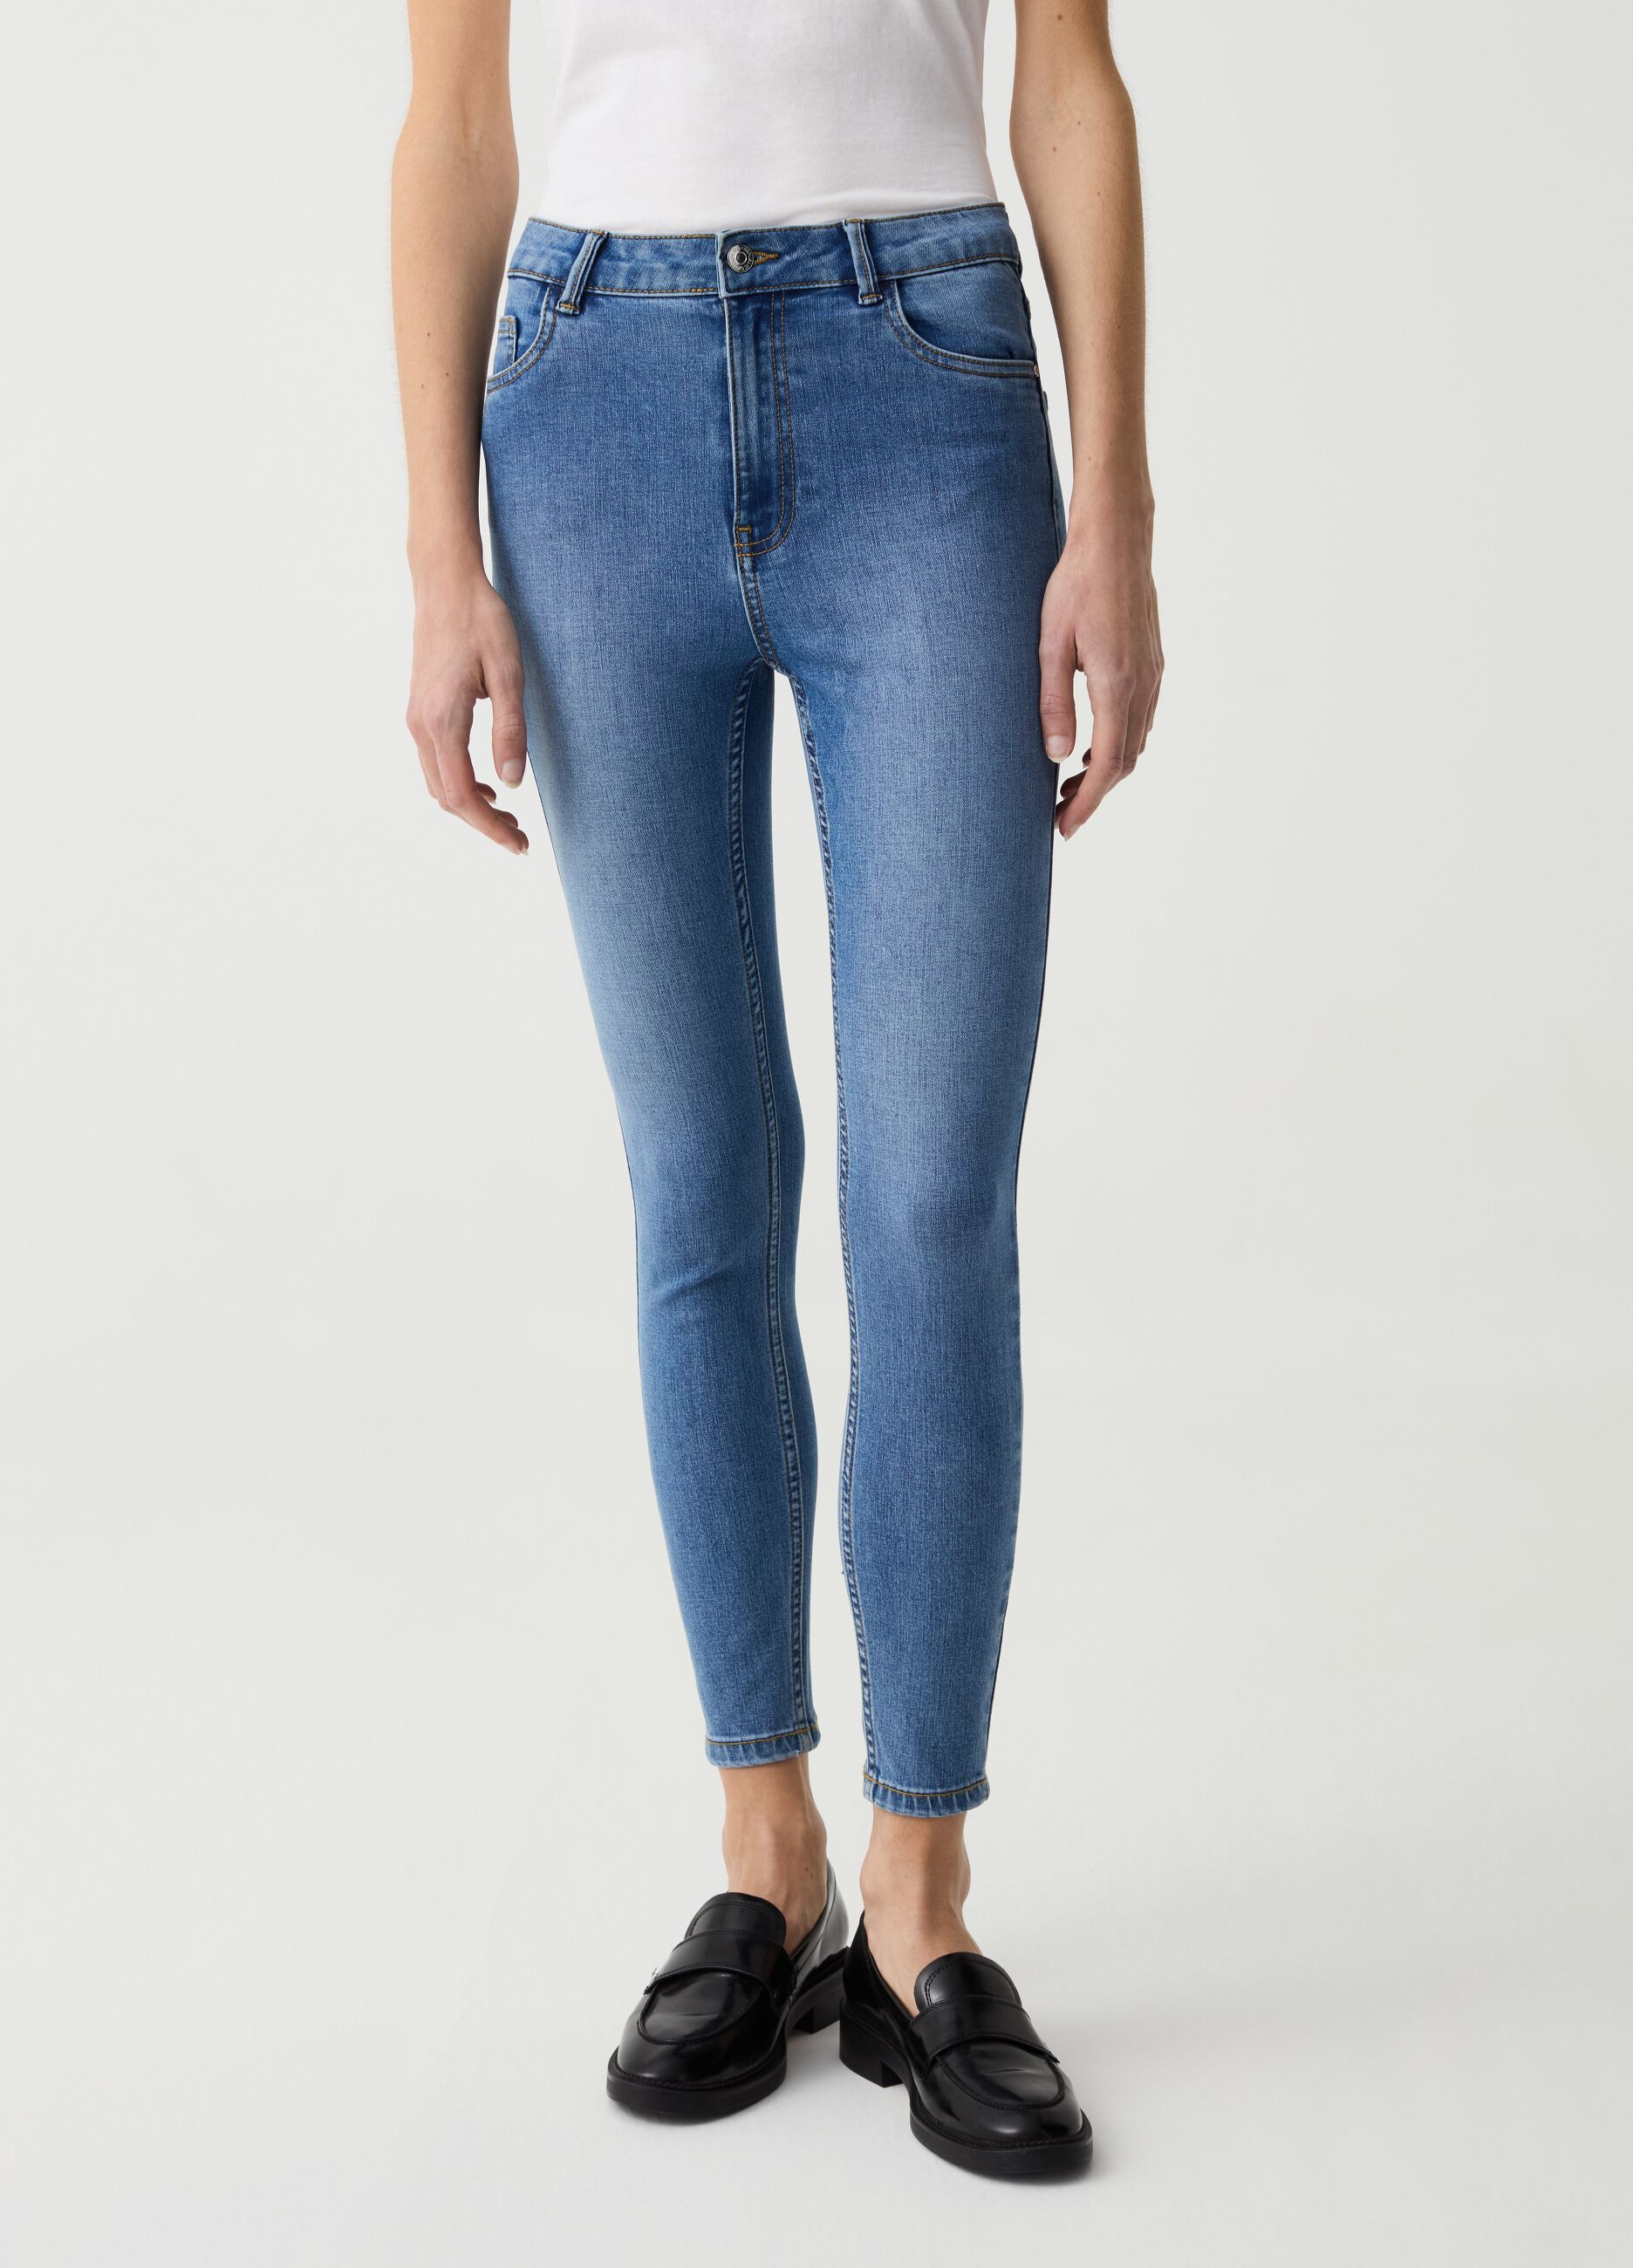 Skinny-fit crop jeans